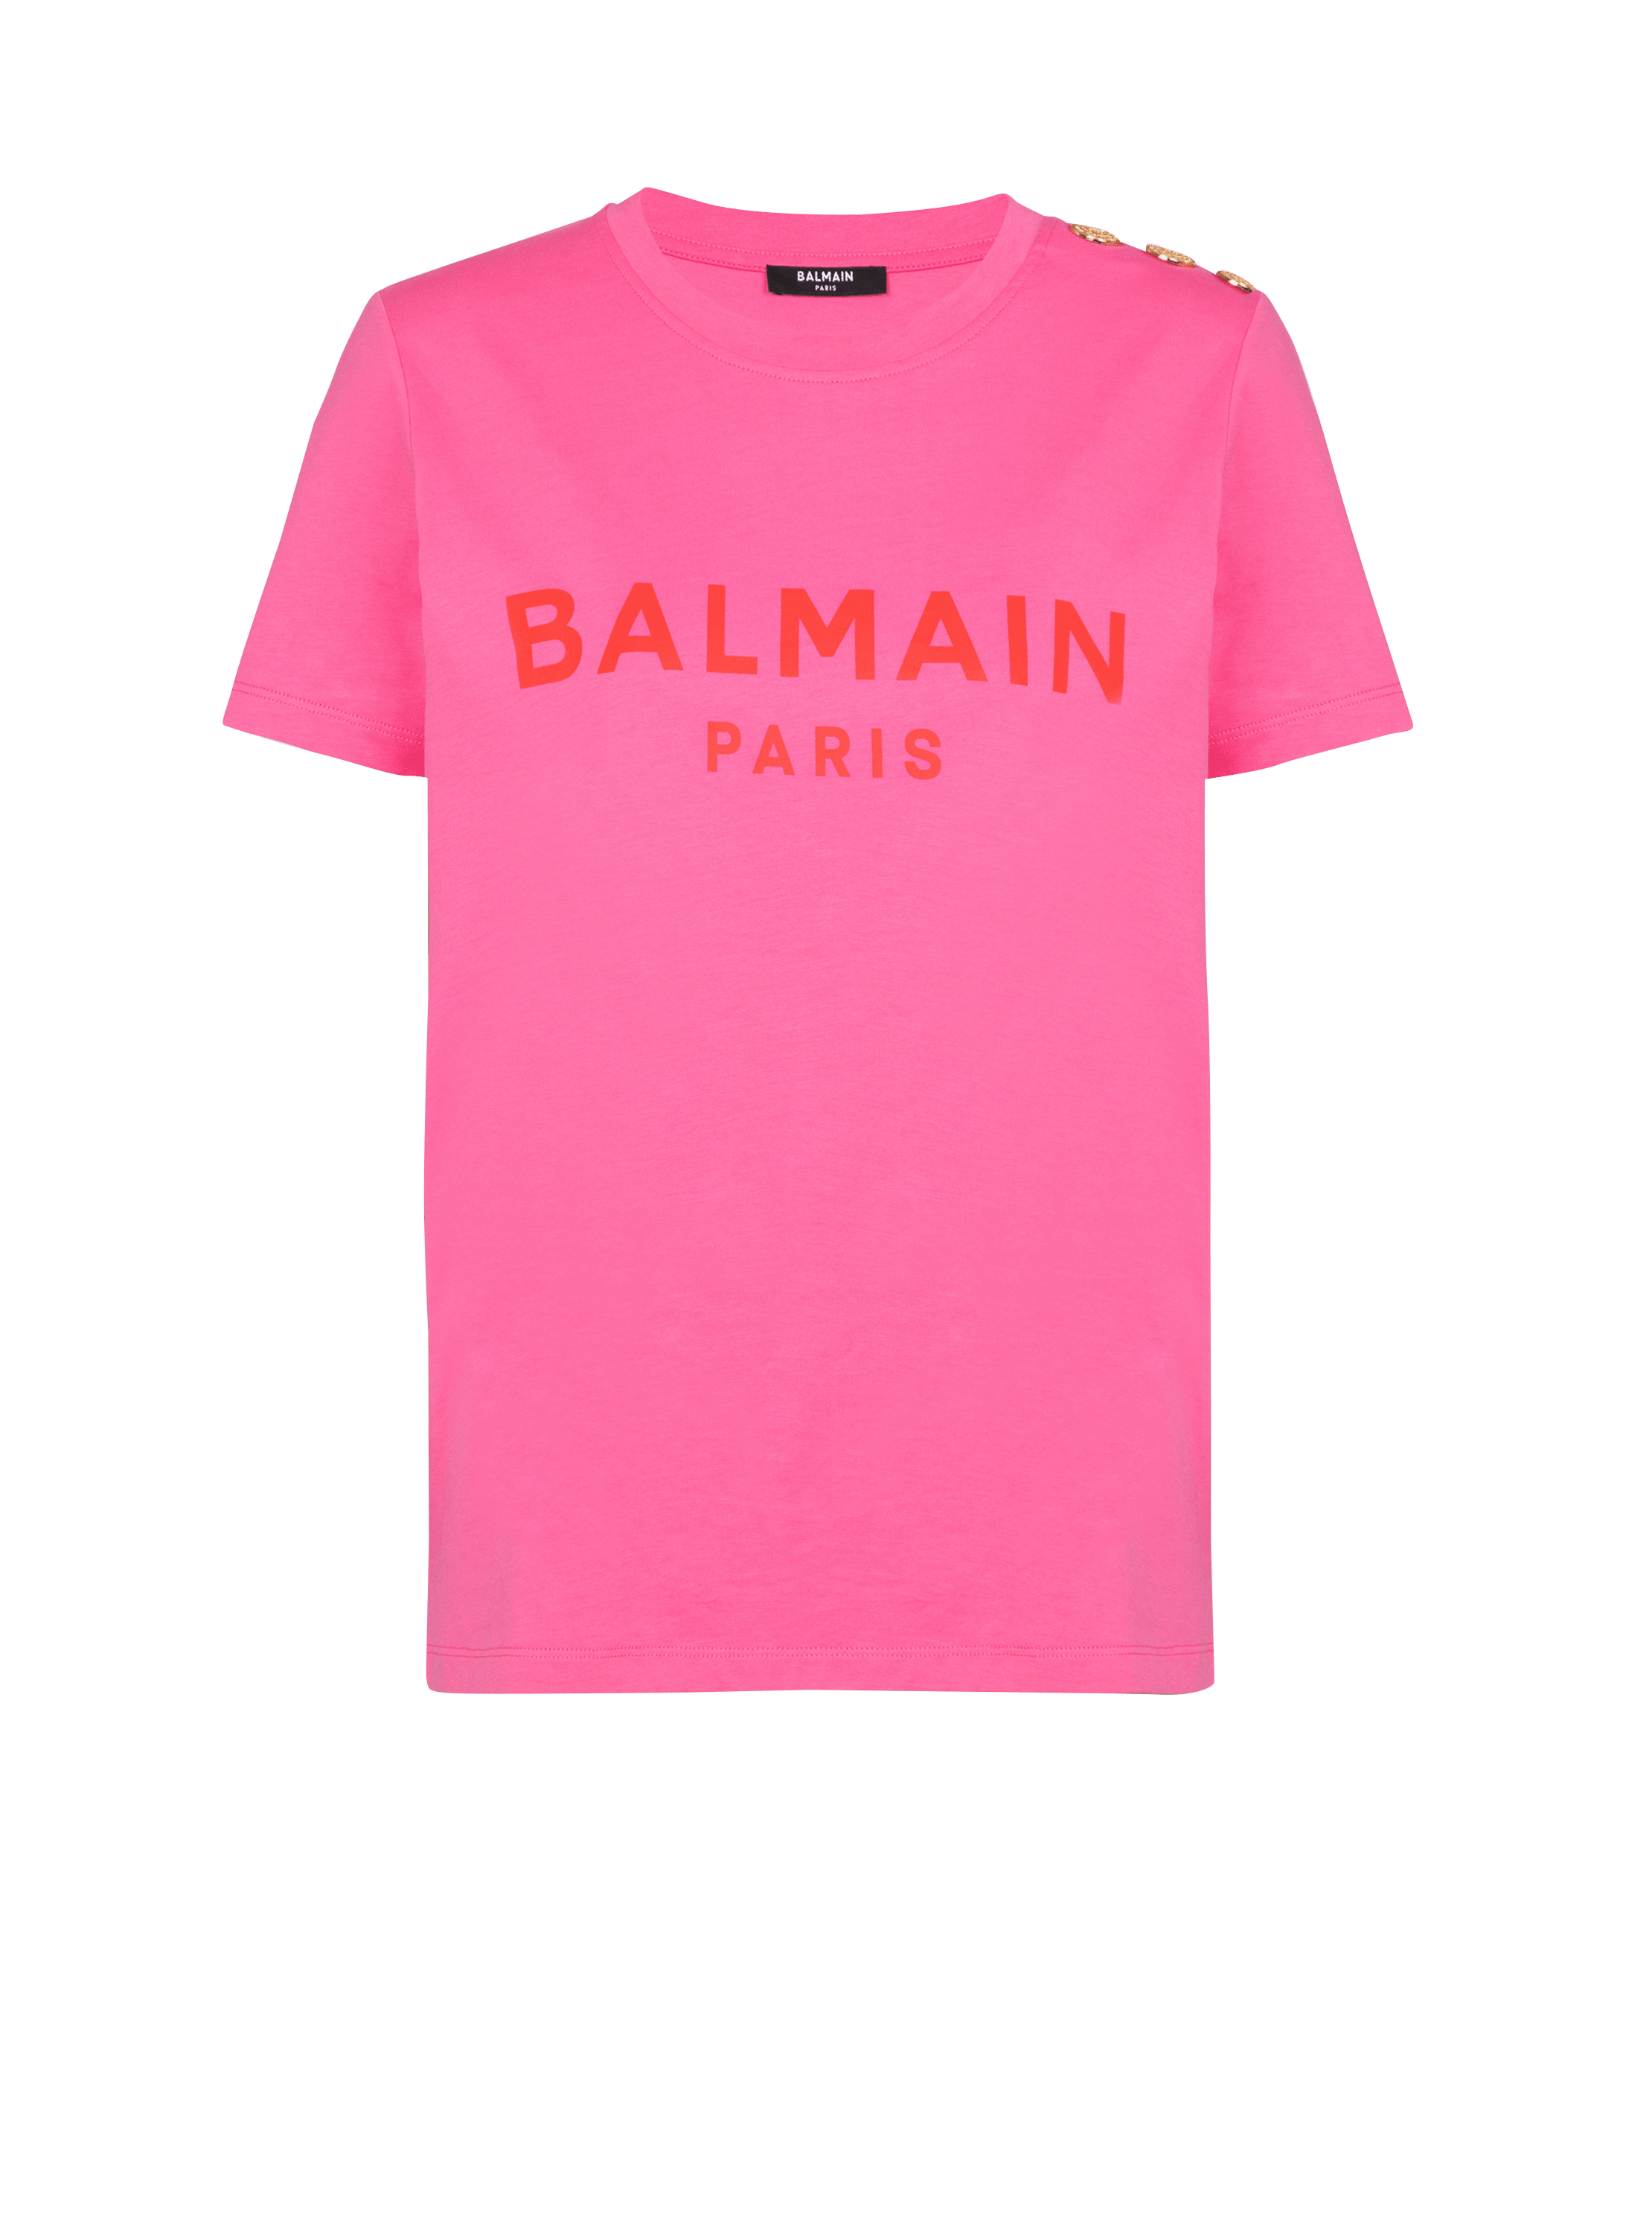 T-shirt with Balmain Paris print